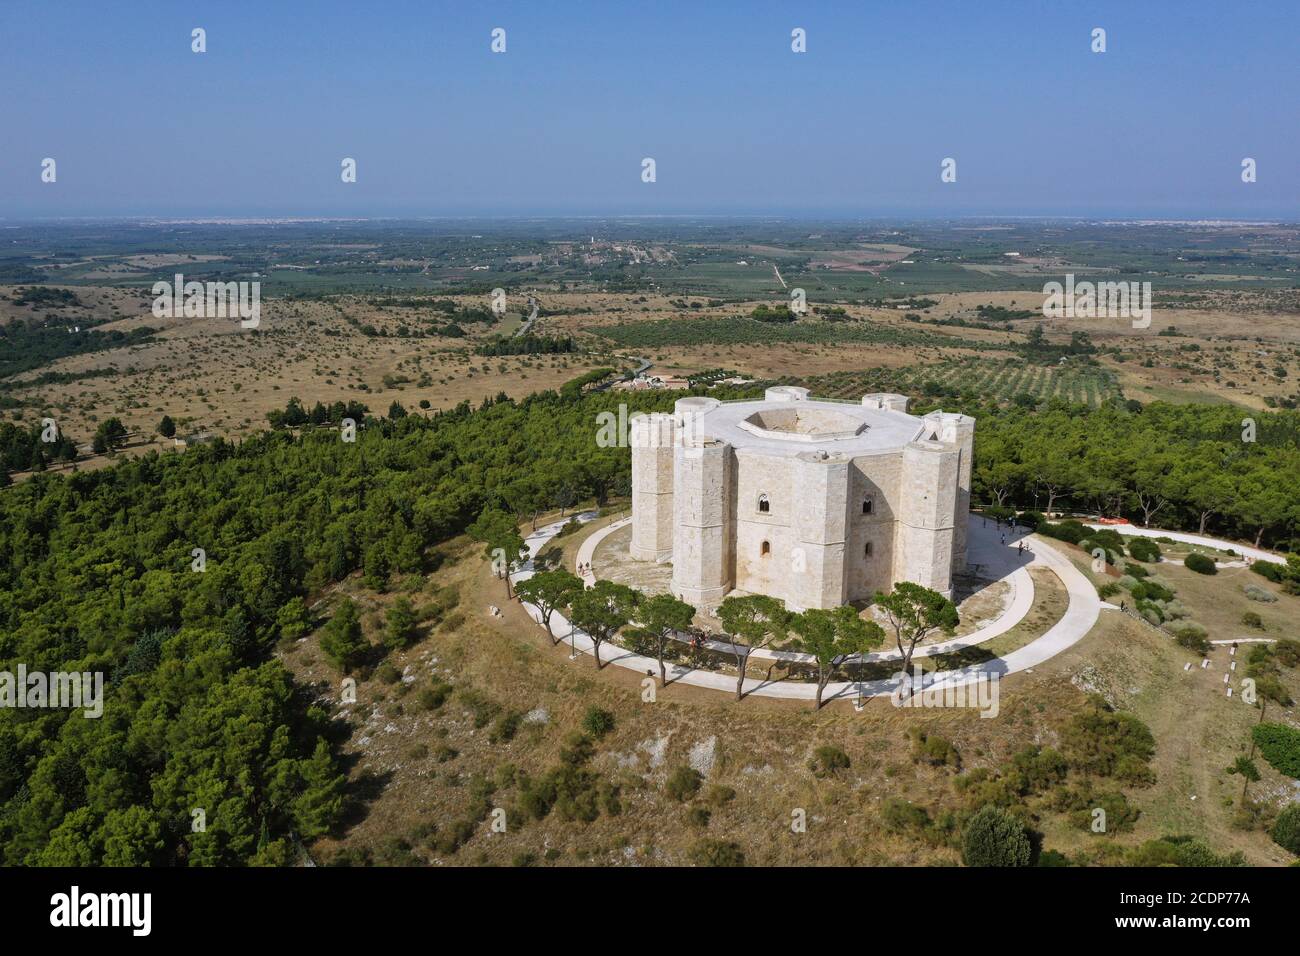 Castel del Monte, Barletta, Andria, Trani, Puglia / Italy: Aerial view of the Castel del Monte Stock Photo